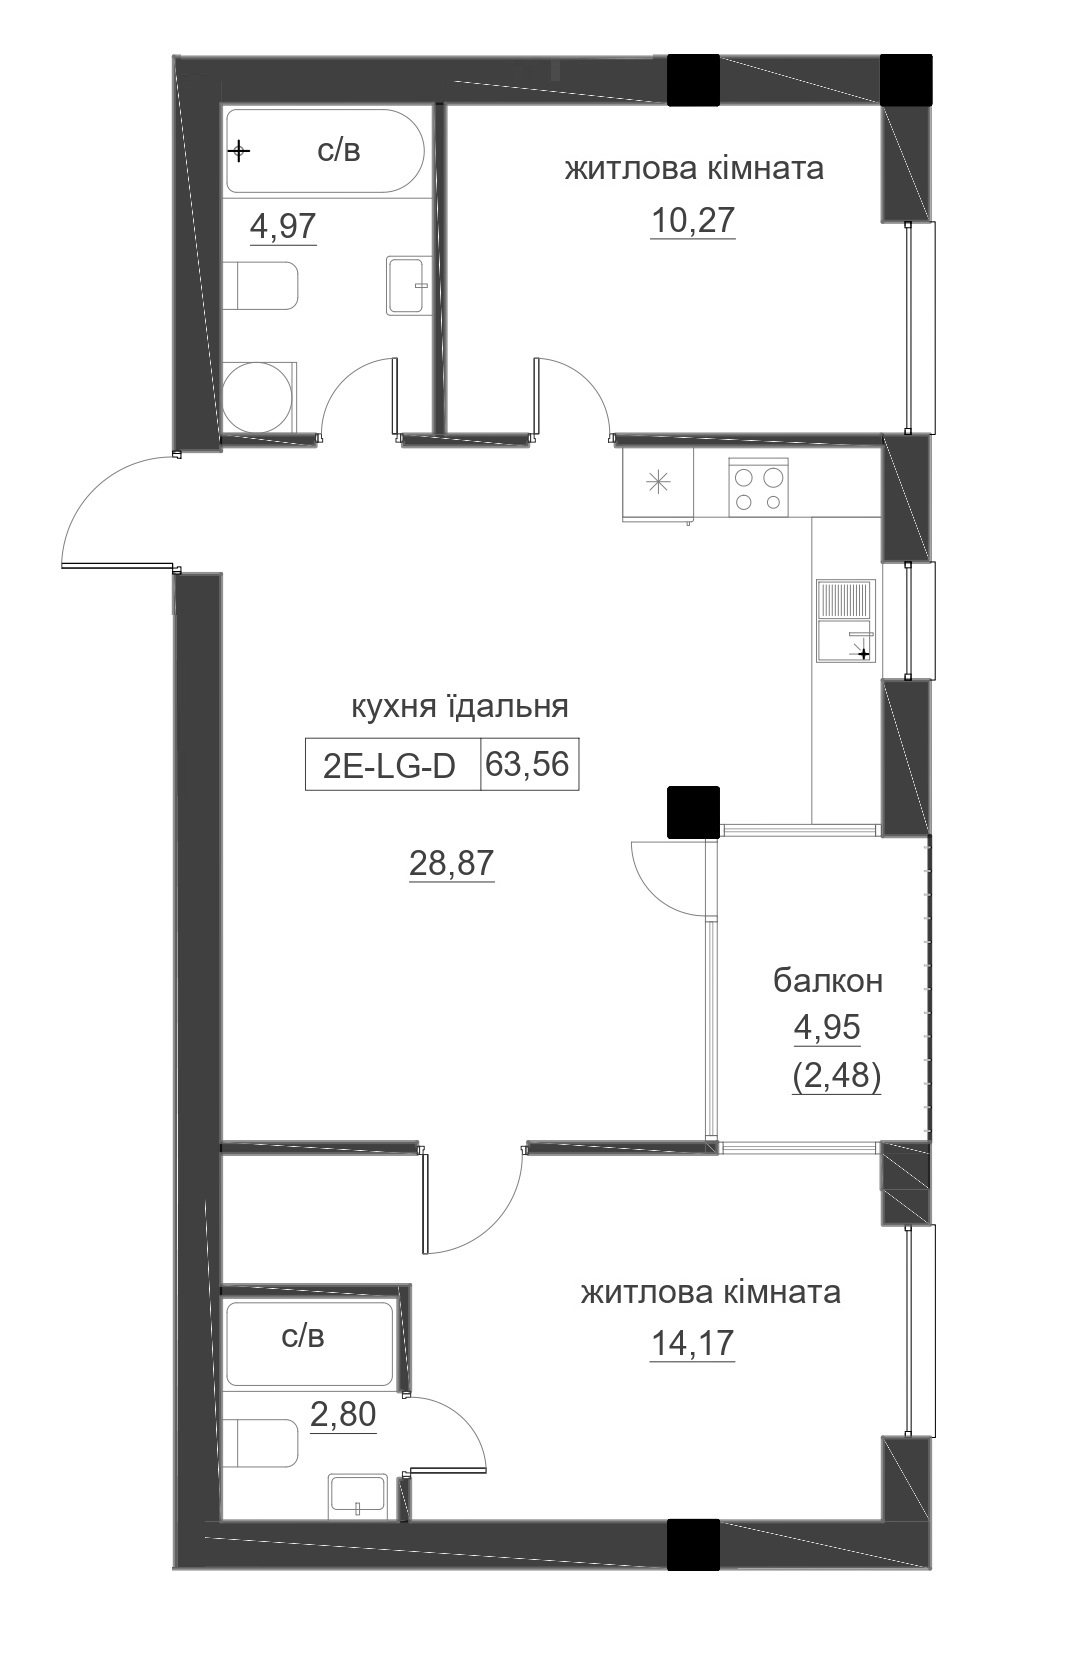 Планировка 2-к квартира площей 63.56м2, LR-005-03/0005.